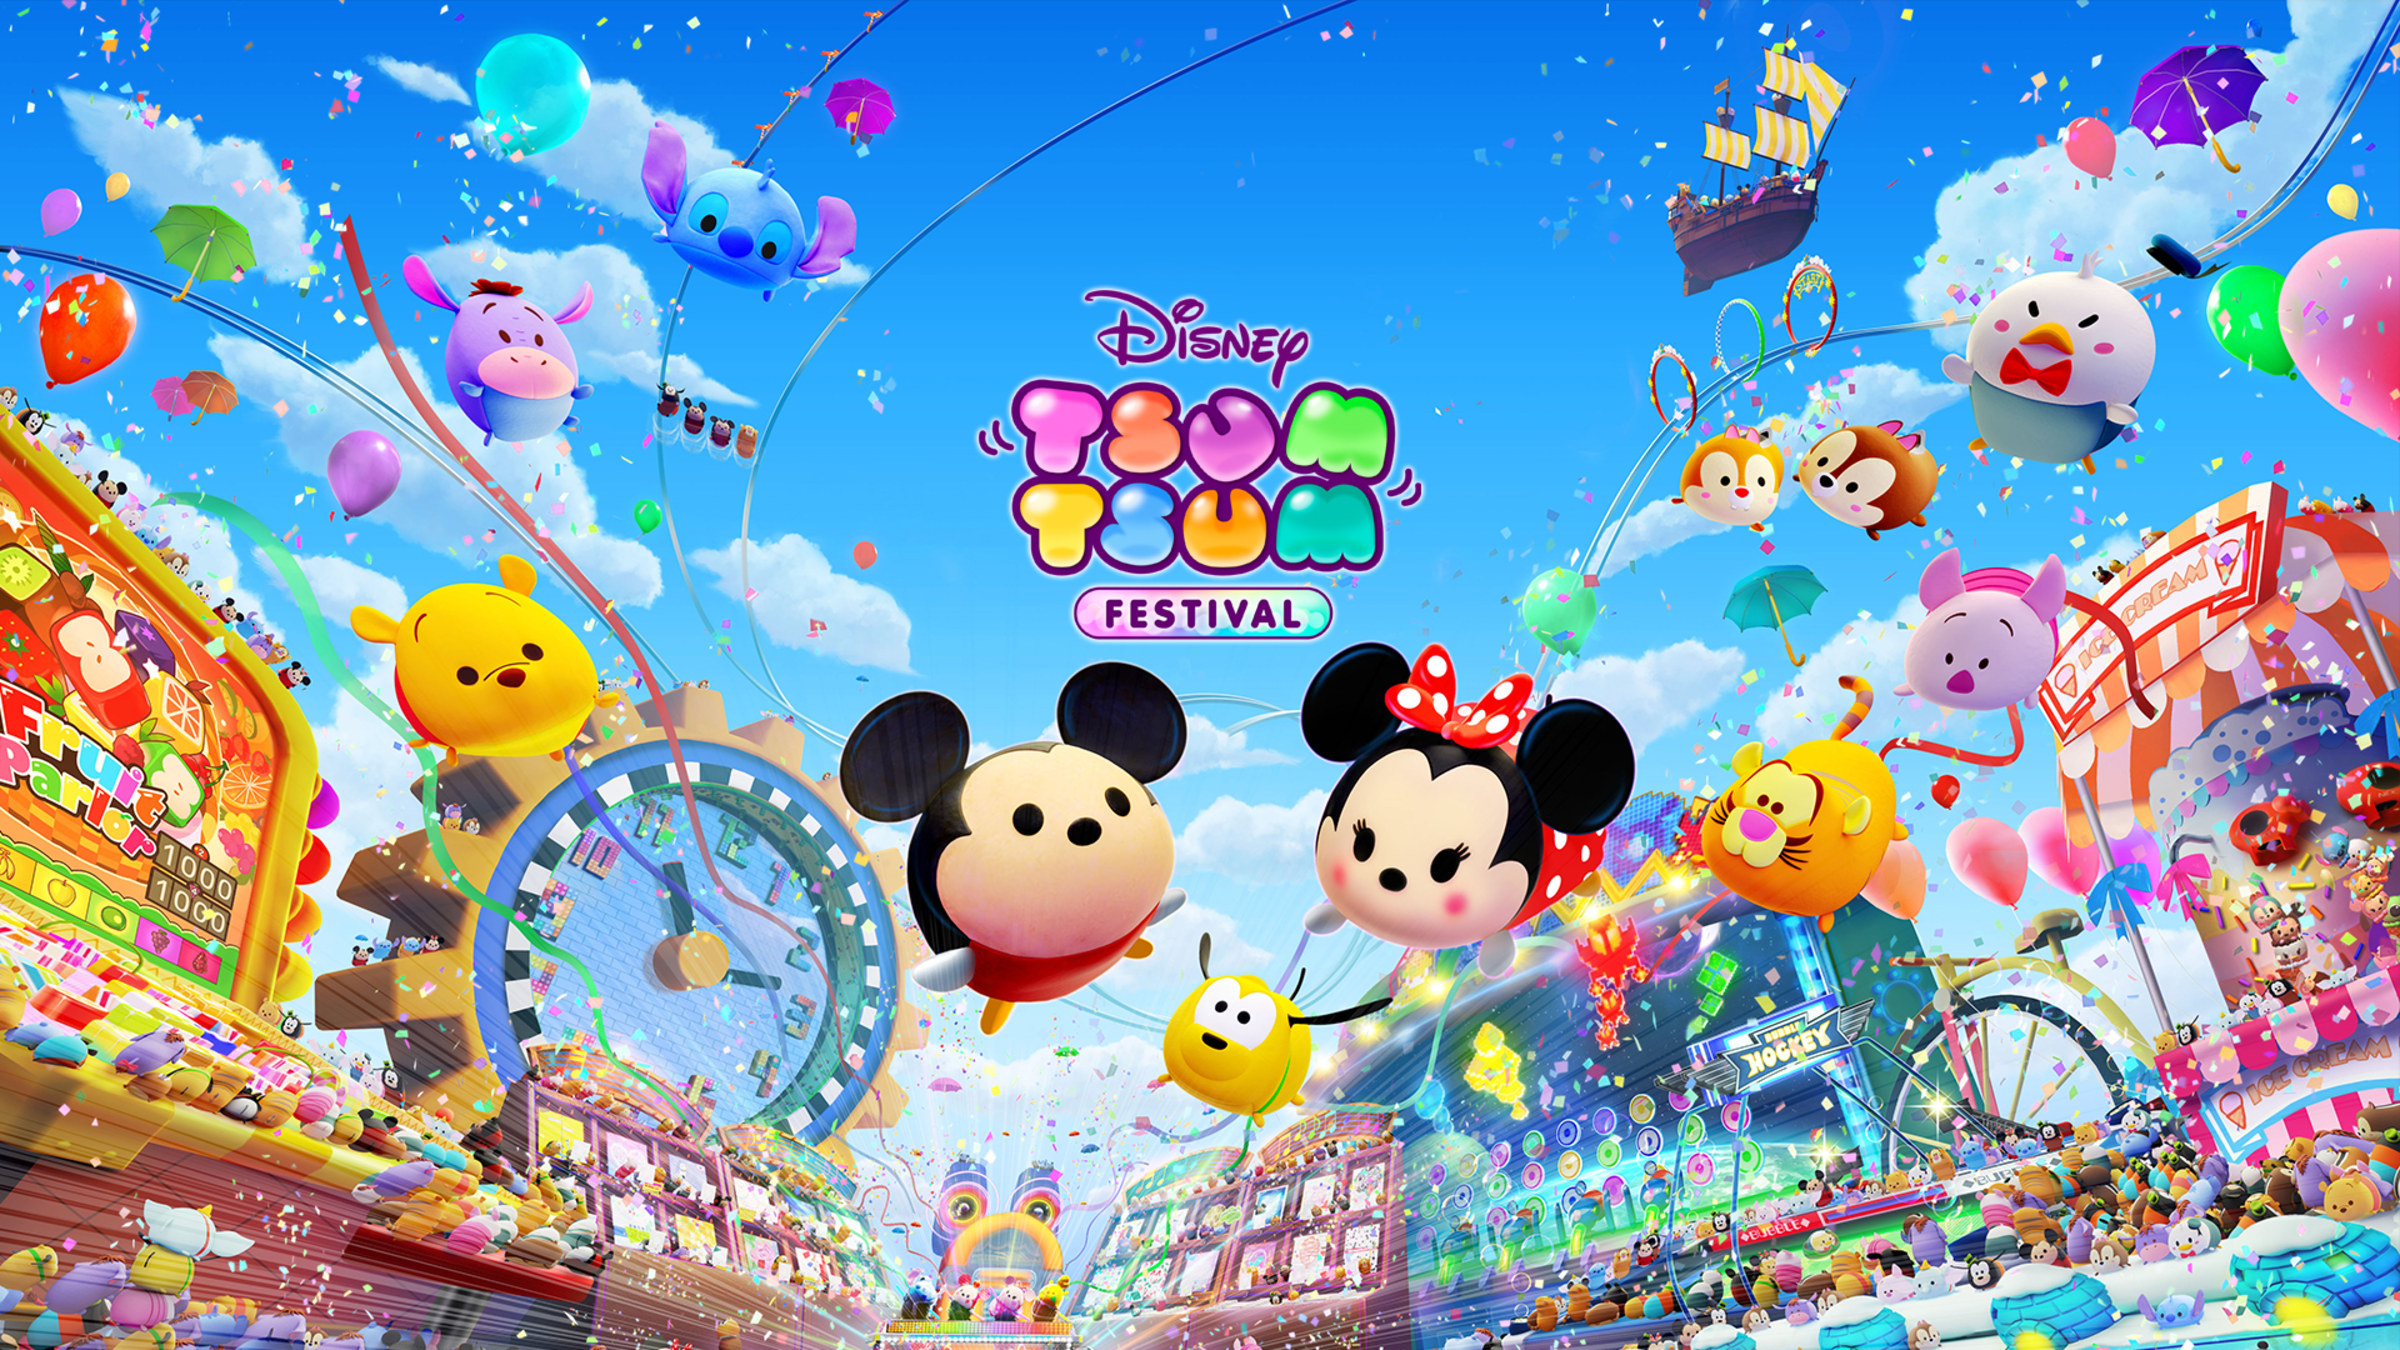 Disney TSUM TSUM FESTIVAL for Nintendo Switch - Nintendo Official Site